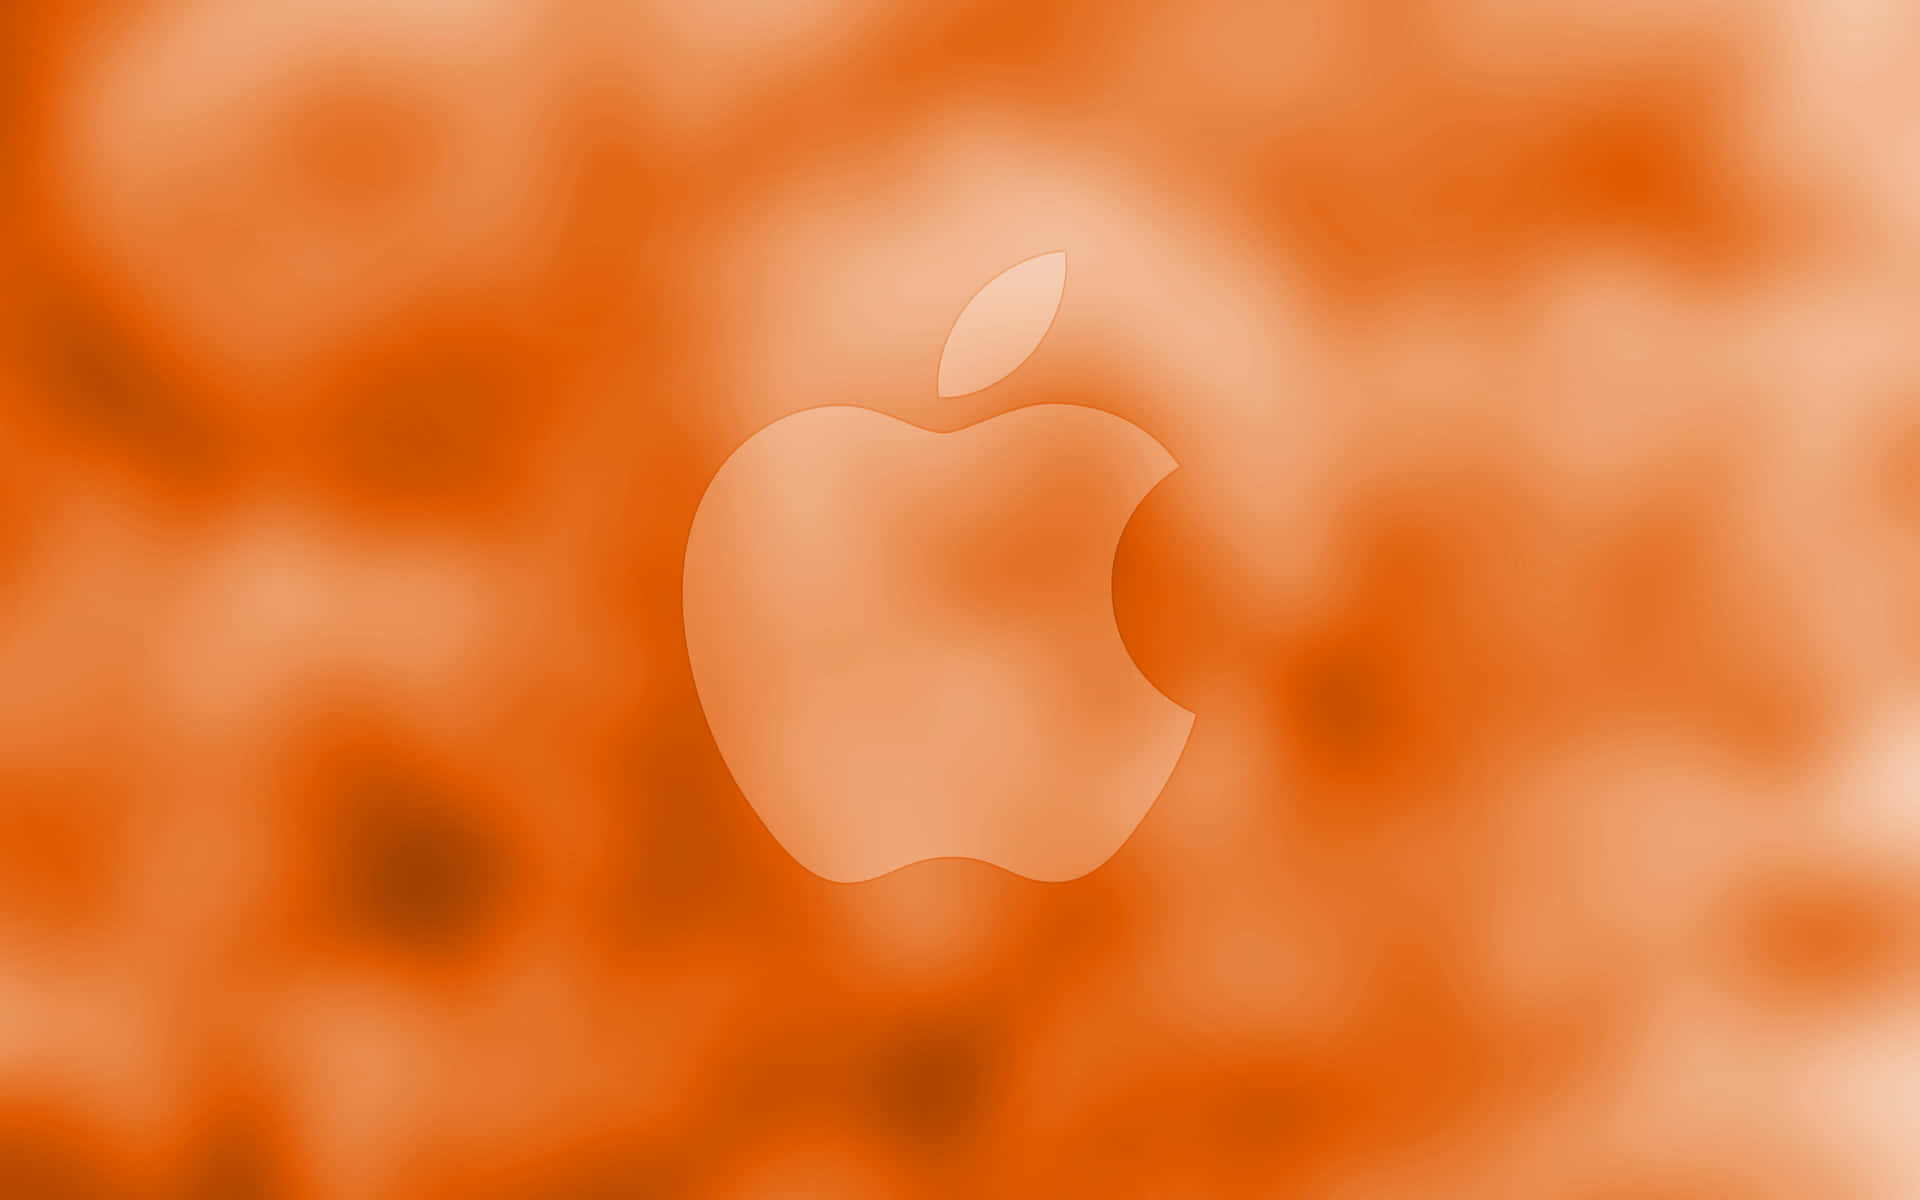 Apples4k Opløsning For Ultimativ Klarhed.